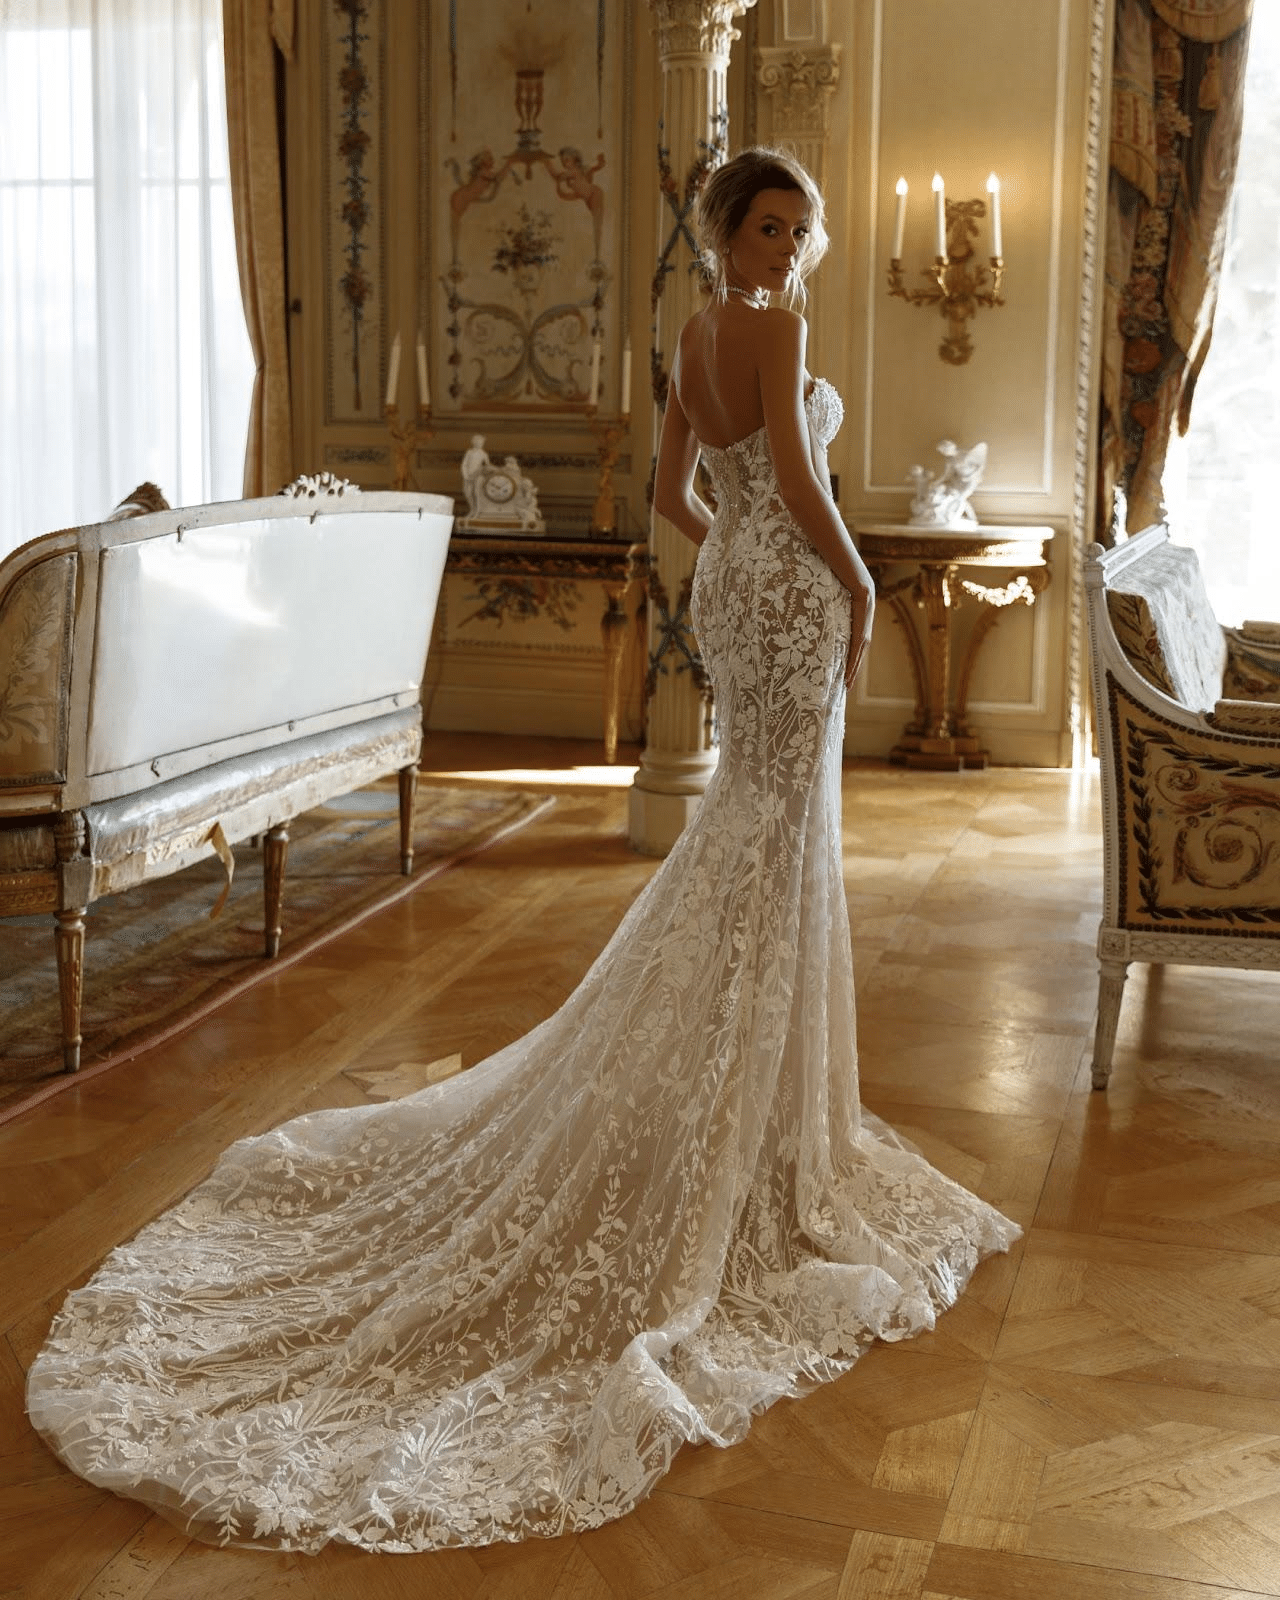 OKSANA MUKHA's World of Luxurious Wedding Couture